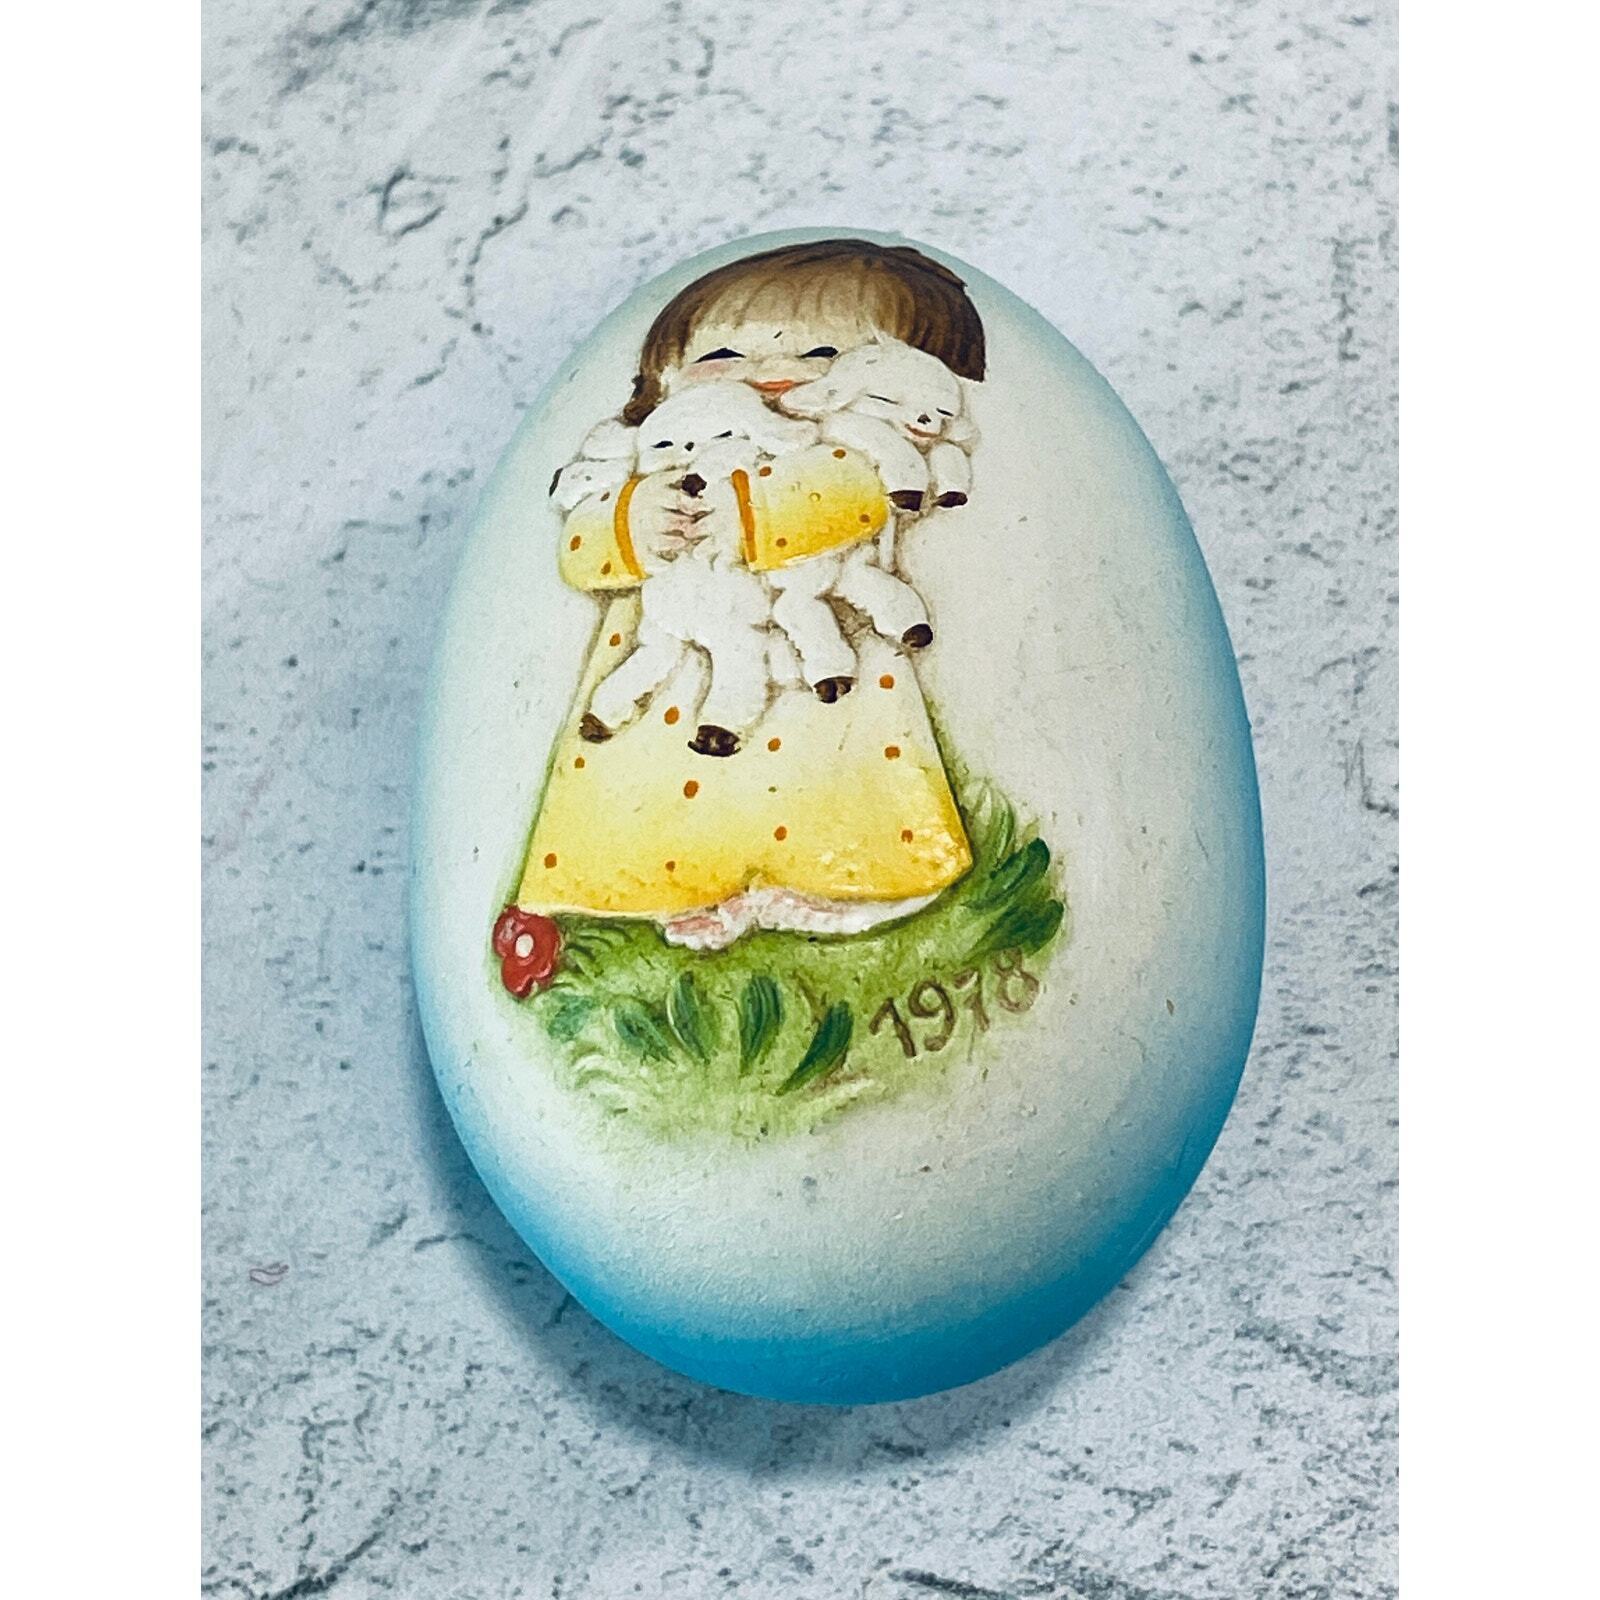 Vintage 1978 Ferrandiz Easter Egg, Little Girl Holding Lamb, ANRI in Italy